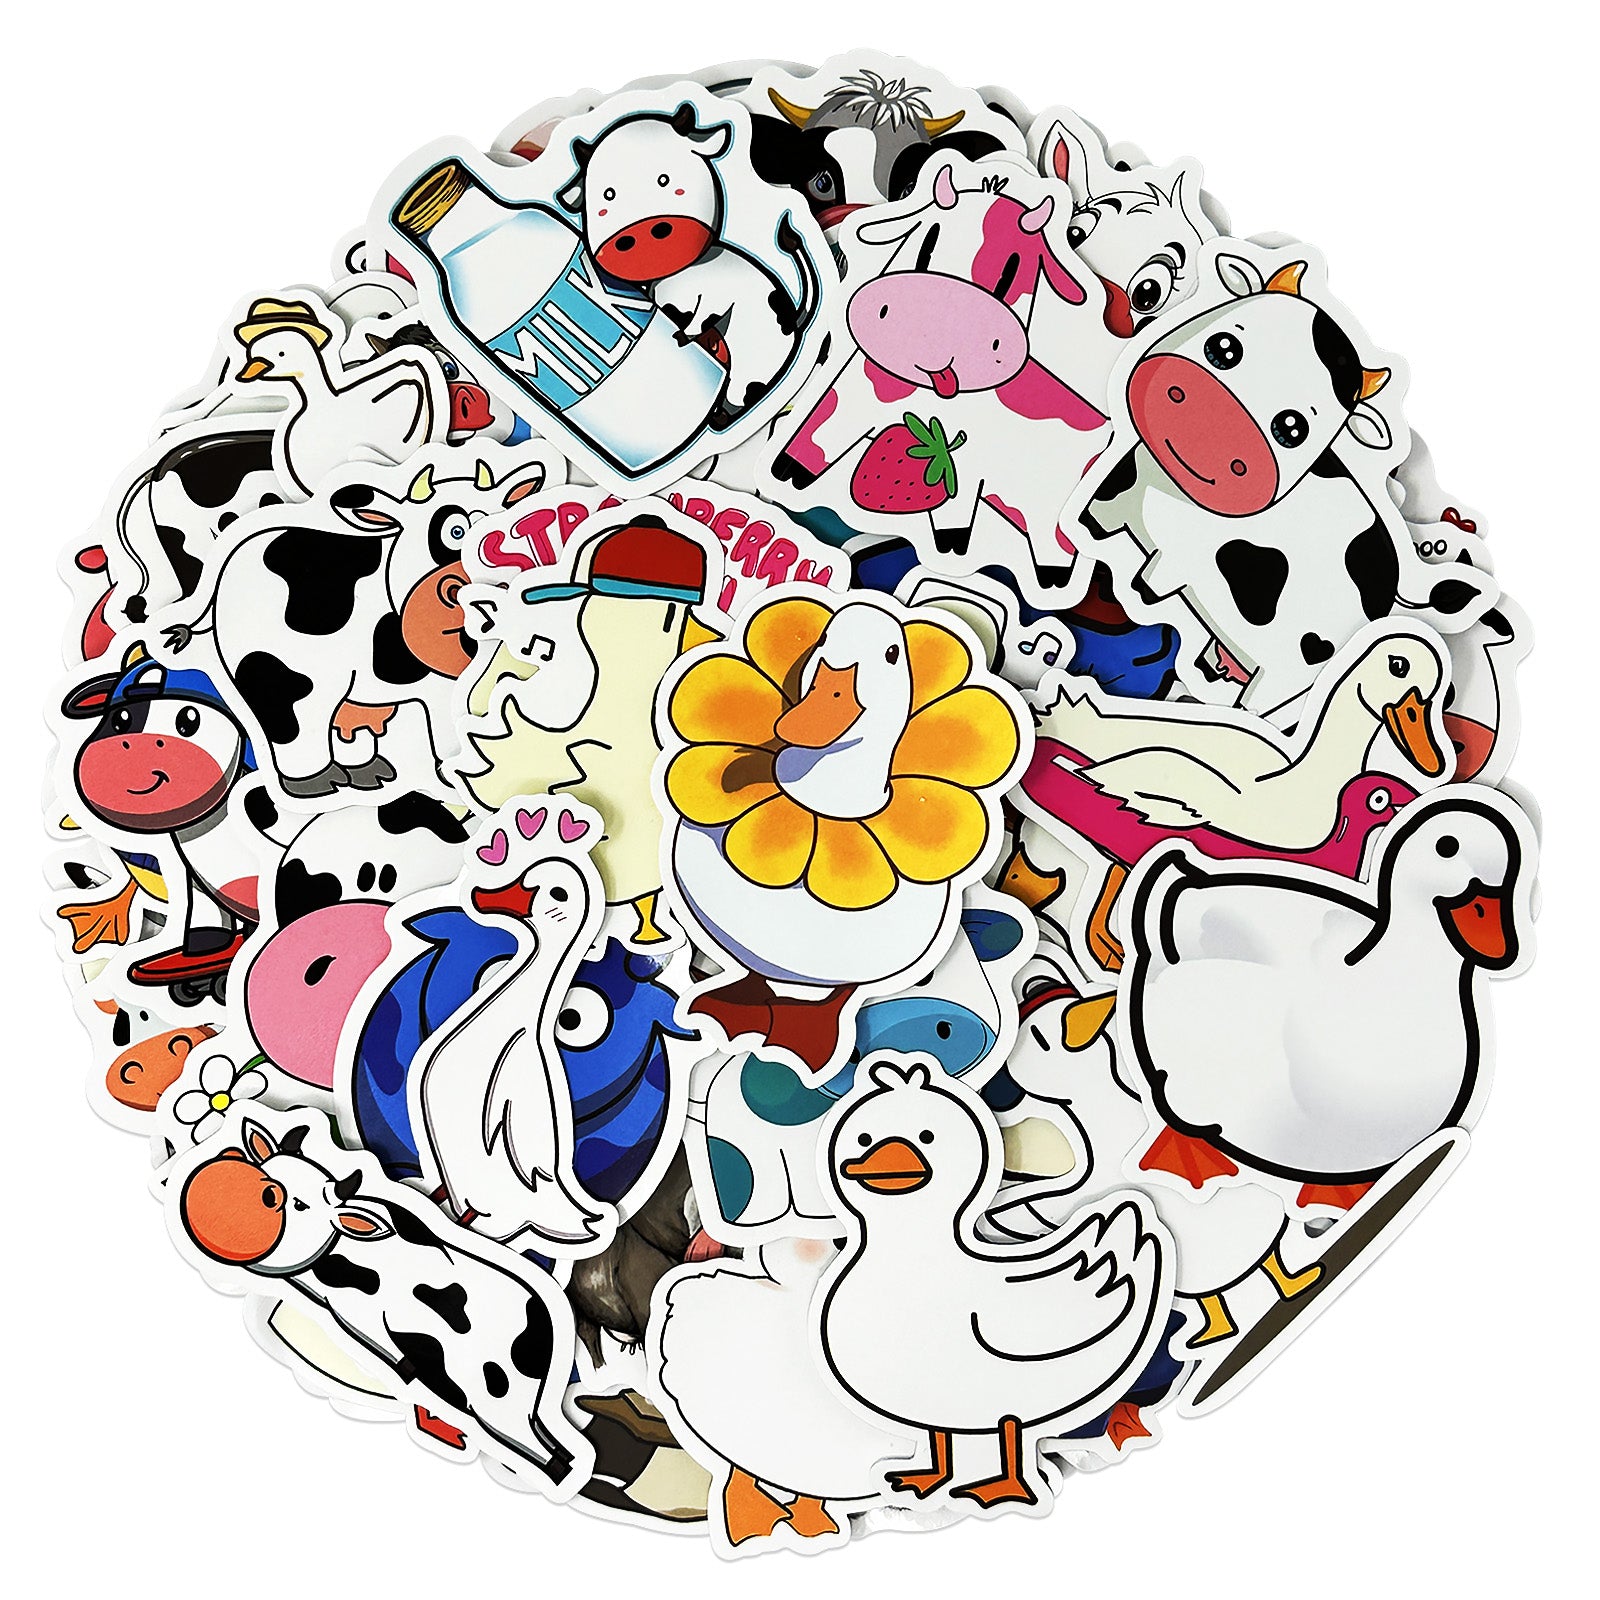 Cute Animal Stickers for Kids, Teens- 100PCS Premium Waterproof Vinyl  Kawaii Aesthetic Stickers for Water Bottles